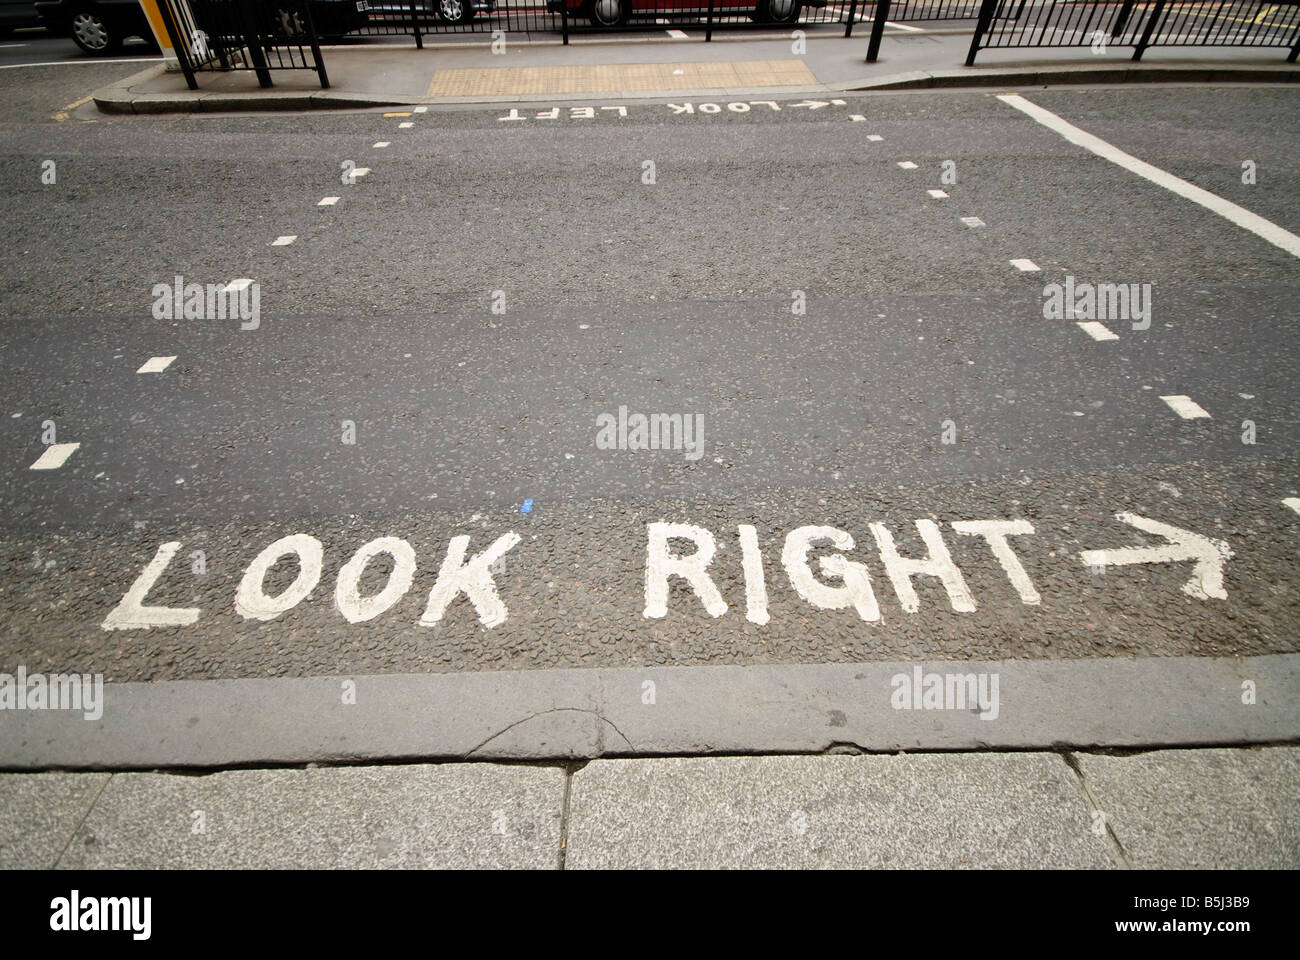 Schauen Sie richtige Vorsicht auf Straßen der Innenstadt von London. Da sie auf der linken Seite in Großbritannien, aber auf der rechten Seite auf dem europäischen Kontinent fahren, viele europäische Touristen in London nicht automatisch der richtige Weg schauen beim Überqueren der Straße. Stockfoto